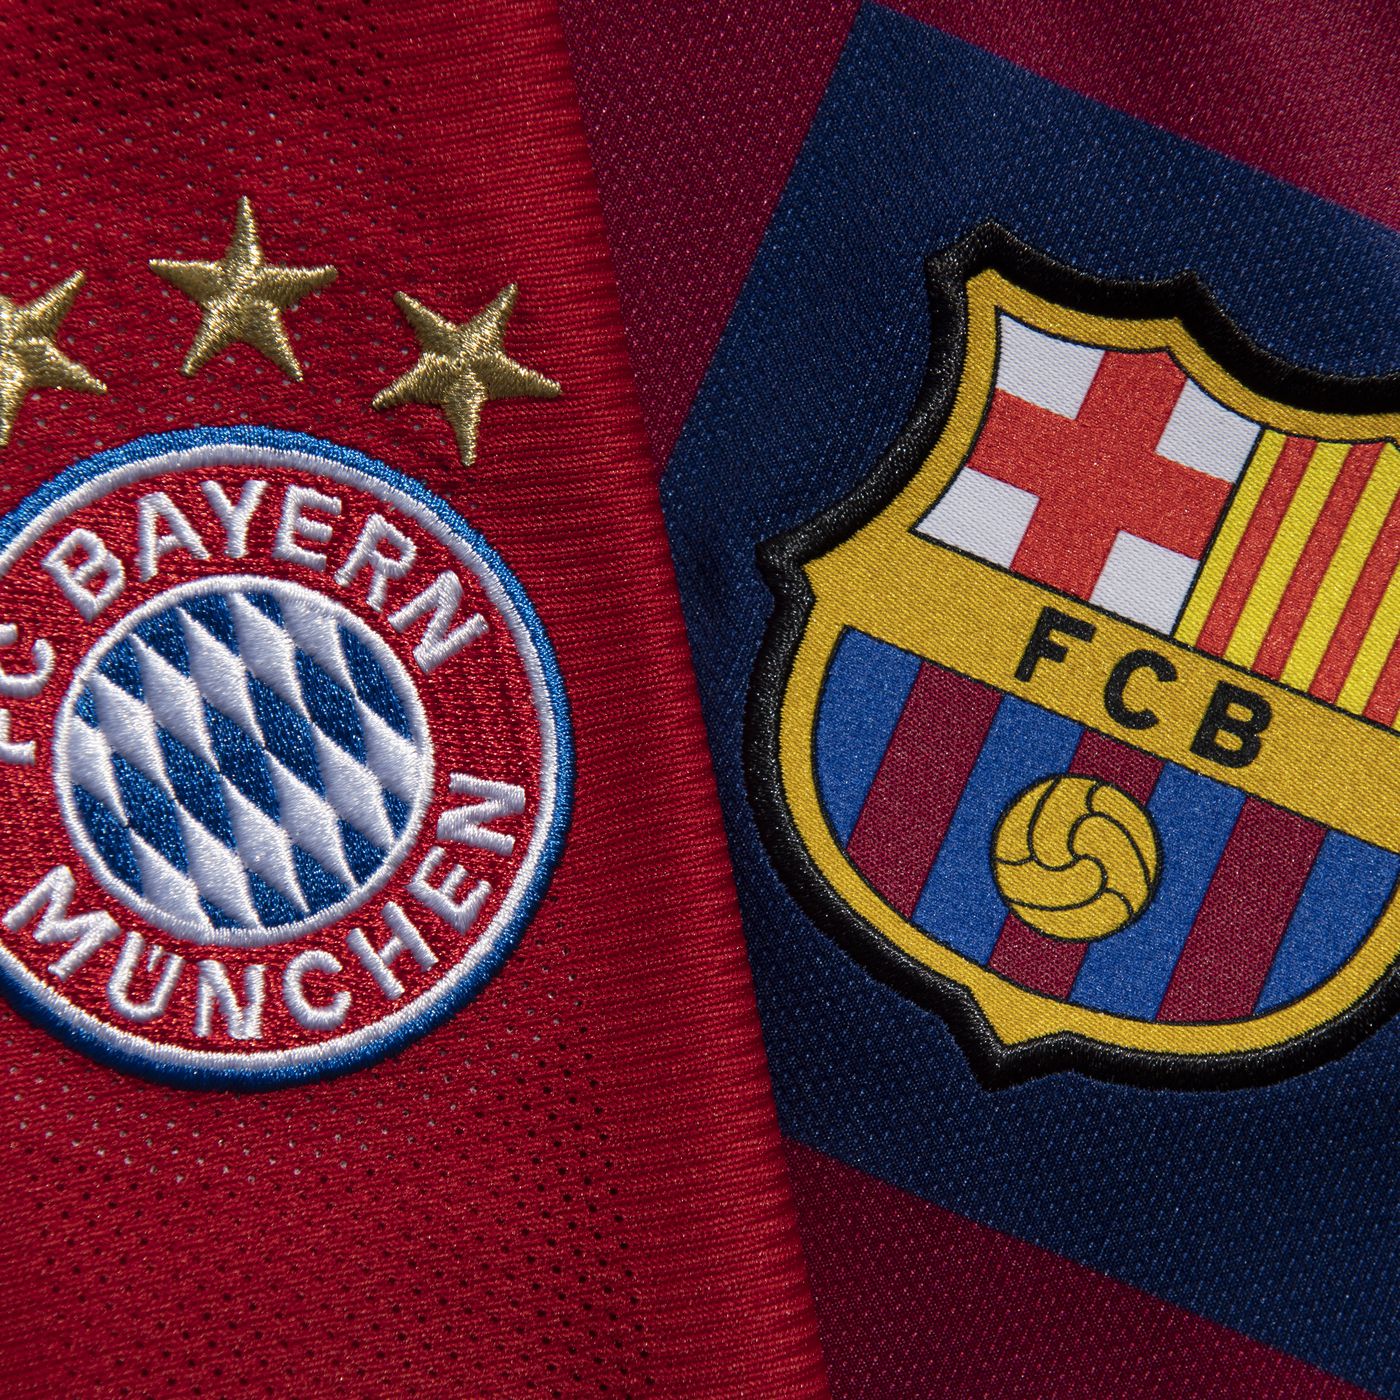 Bayern vs barcelona